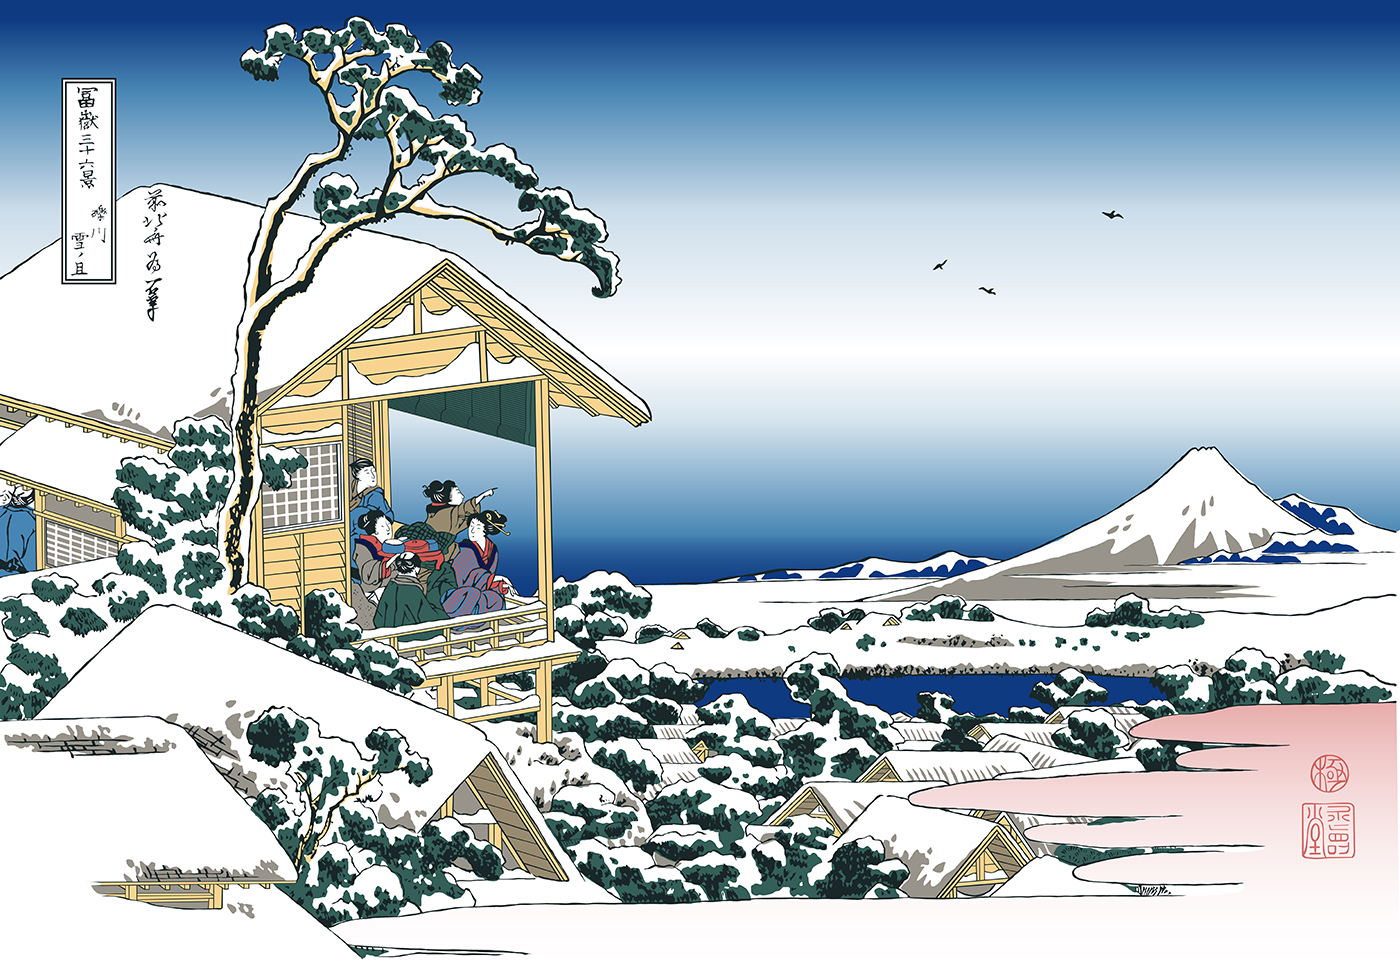 teahouse koishikawa Mount_Fuji fuji mountain woodcut vector Fun adobe illustrator